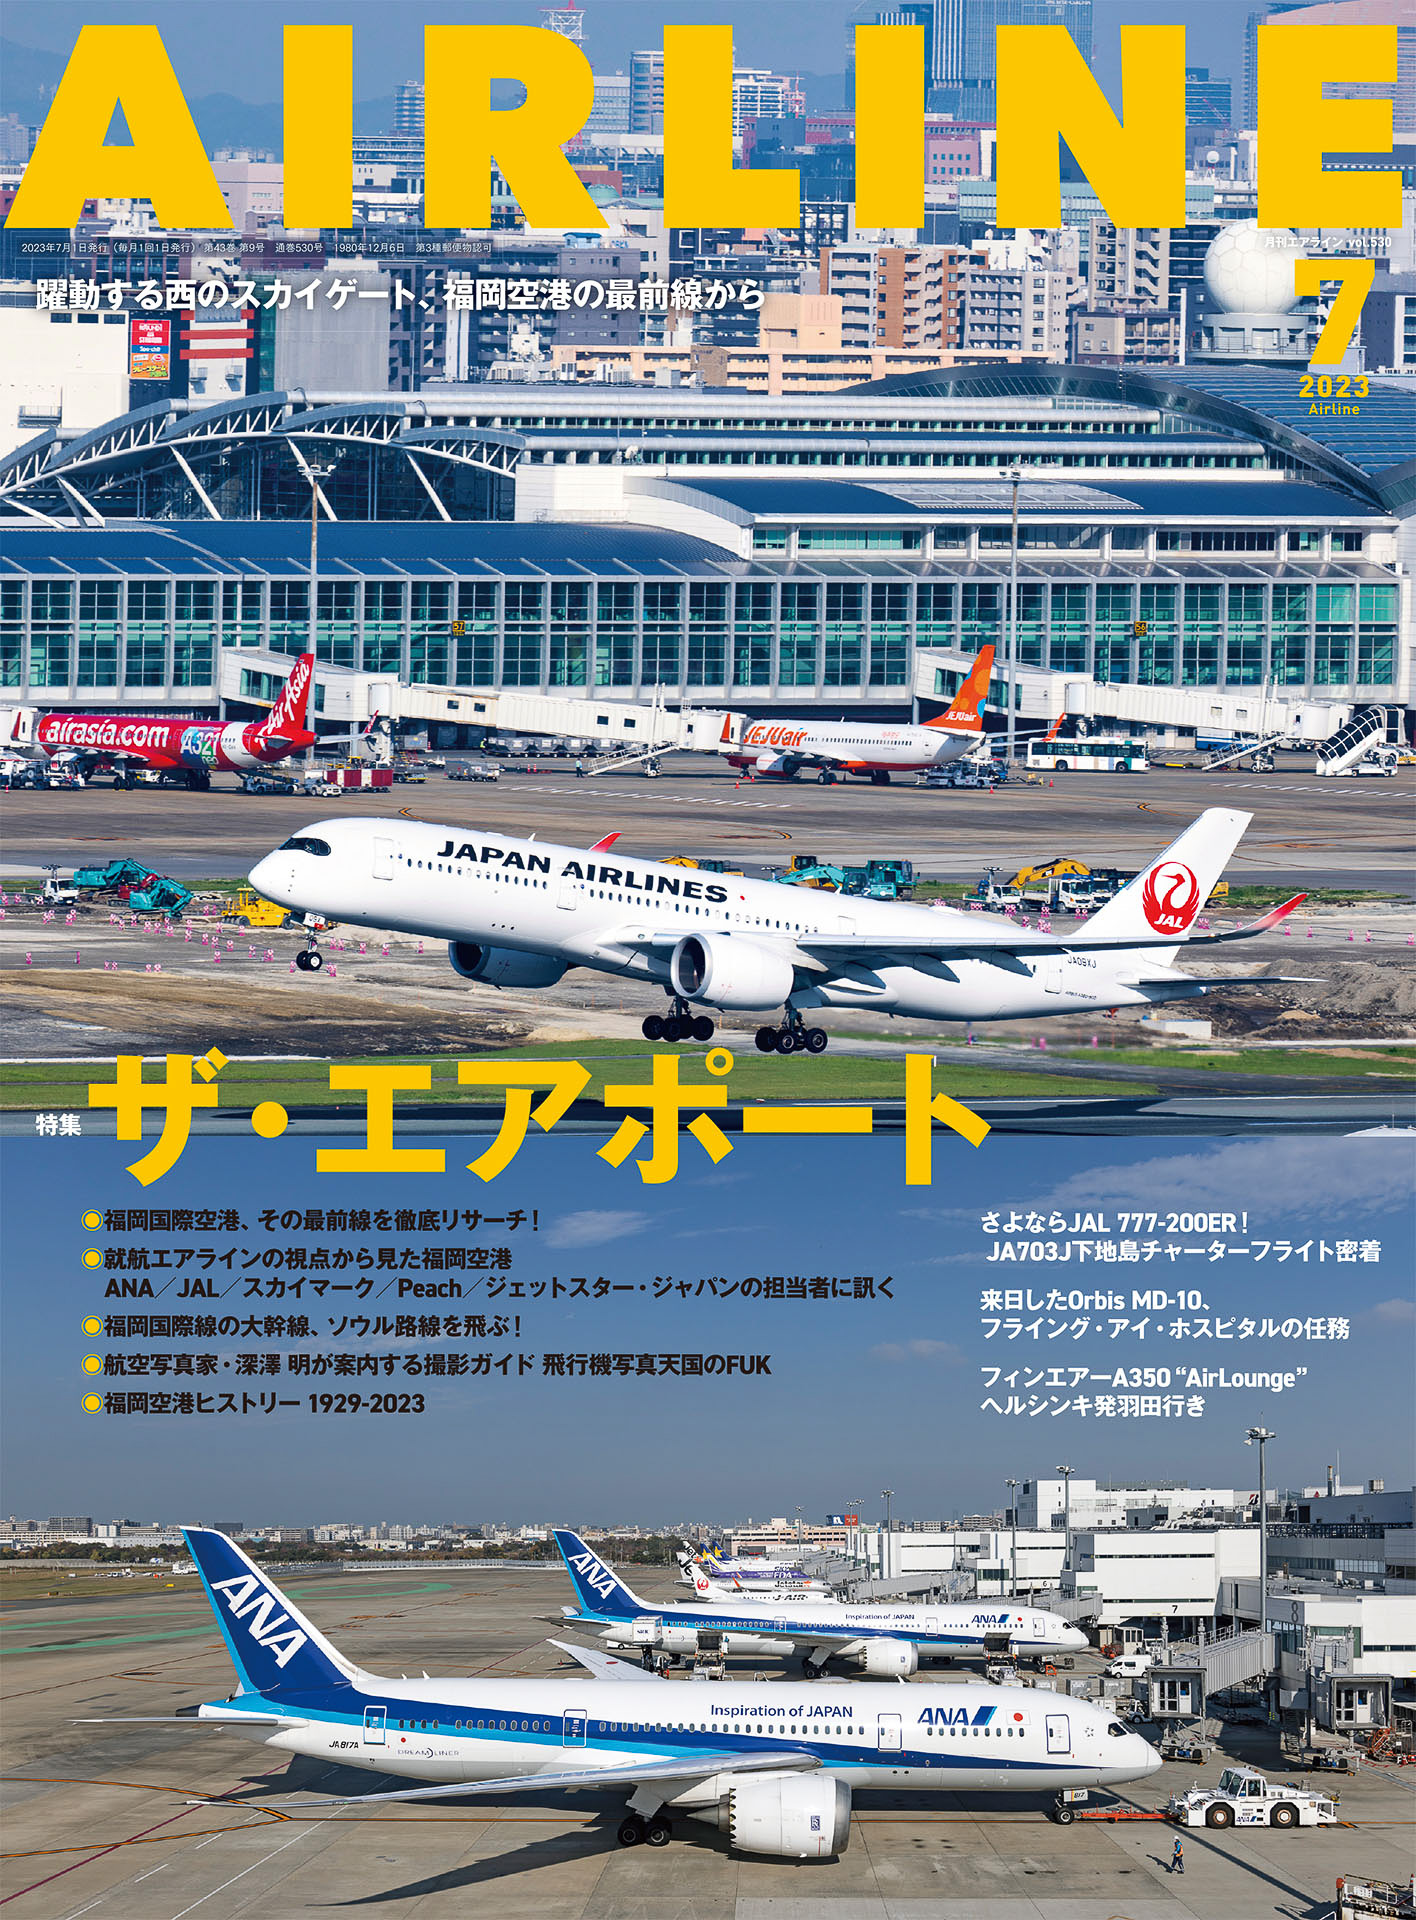 月刊エアライン2023年7月号、特集は一大転換期を迎えた福岡空港に注目 